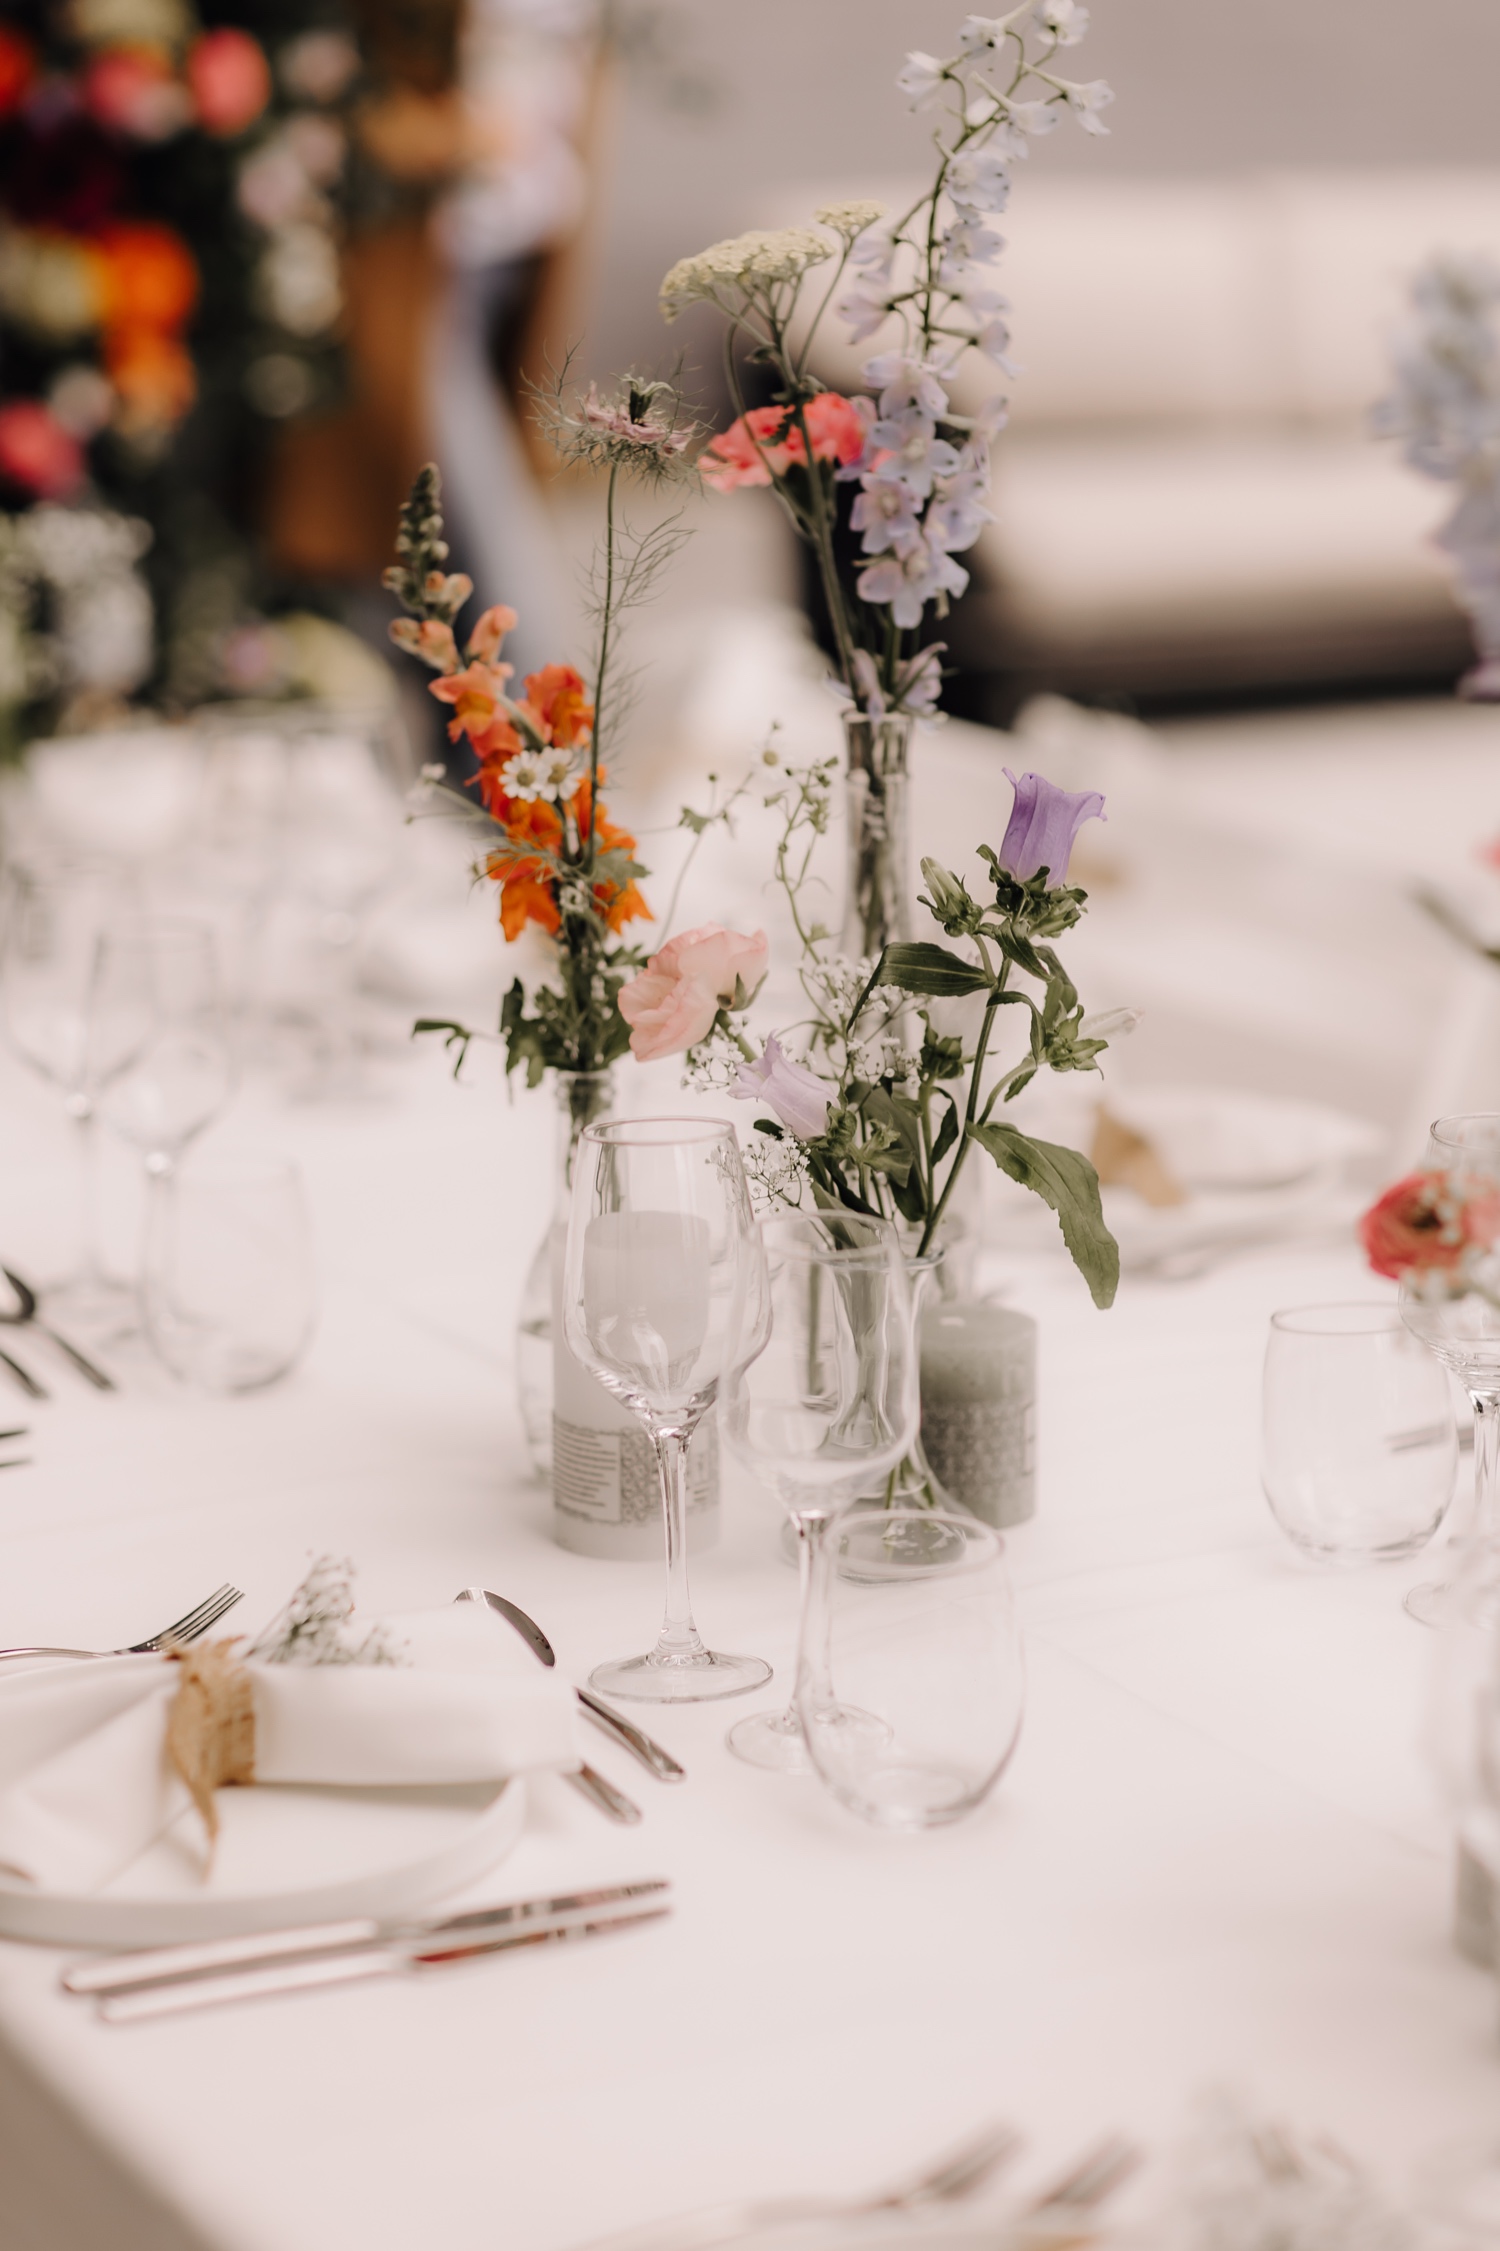 Huwelijksfotograaf Limburg - details van bloemen op de lunchtafel